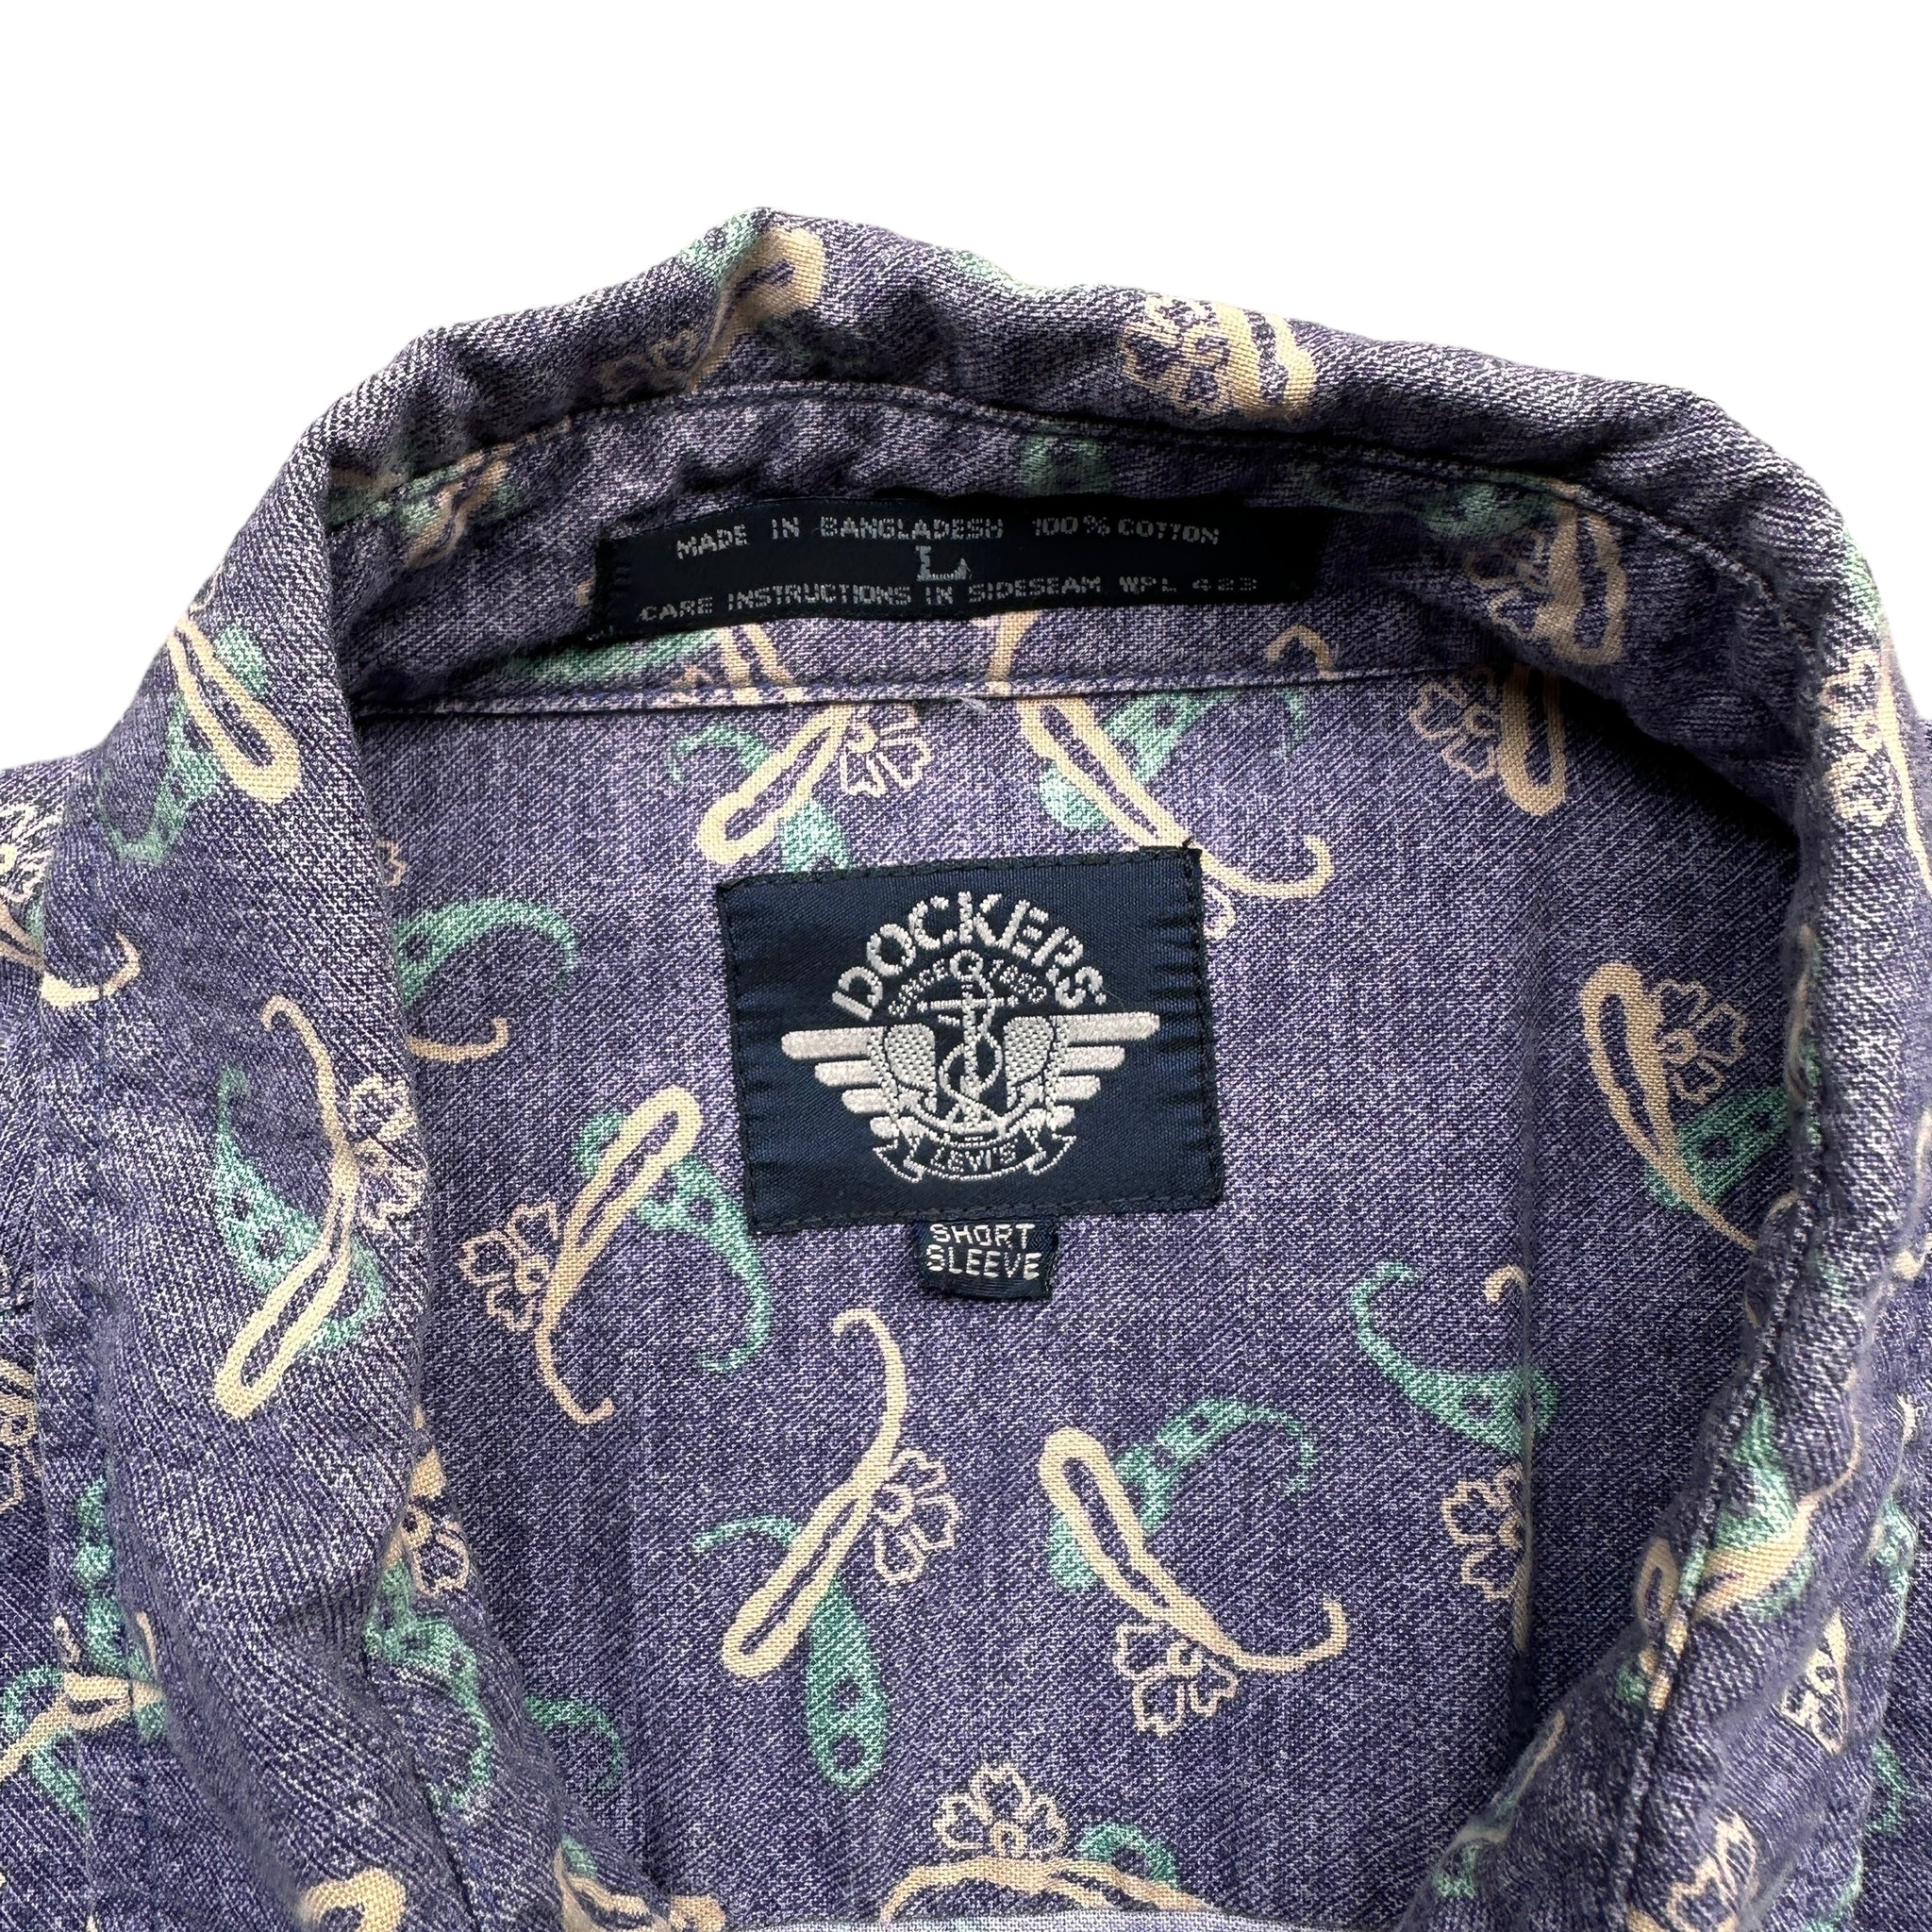 90s Dockers cotton button up short sleeve shirt XL